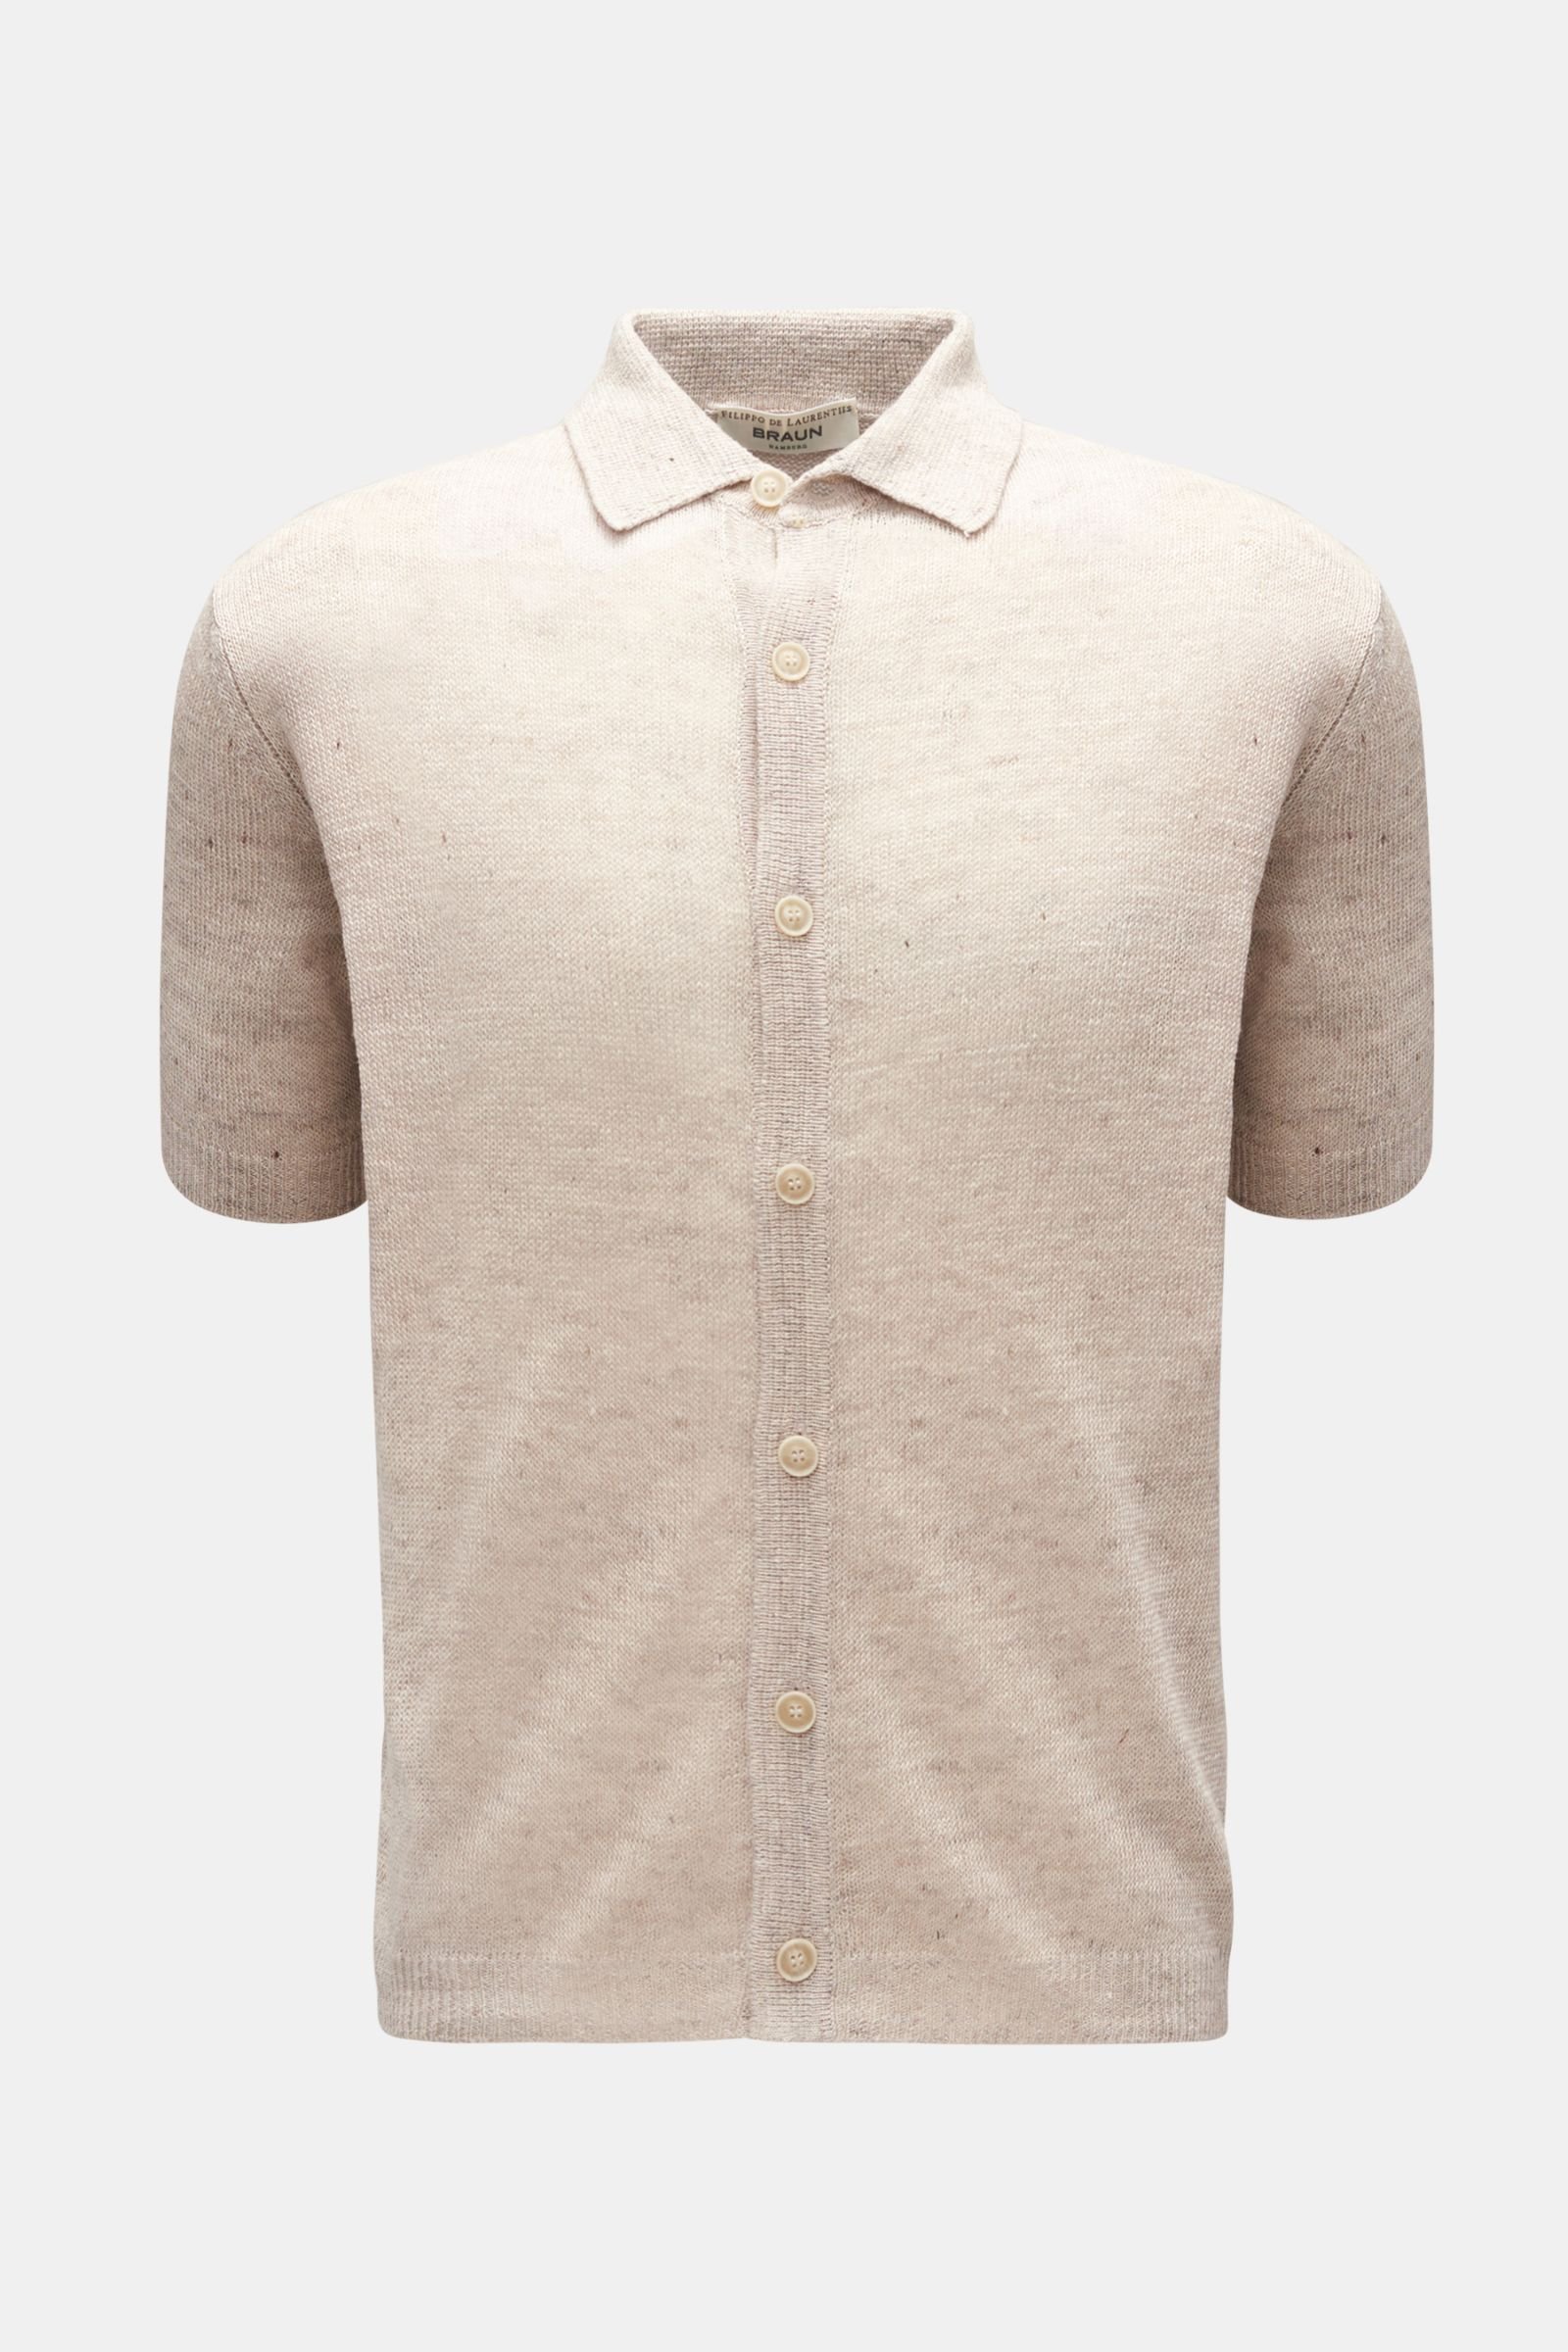 Short sleeve knit shirt narrow collar beige